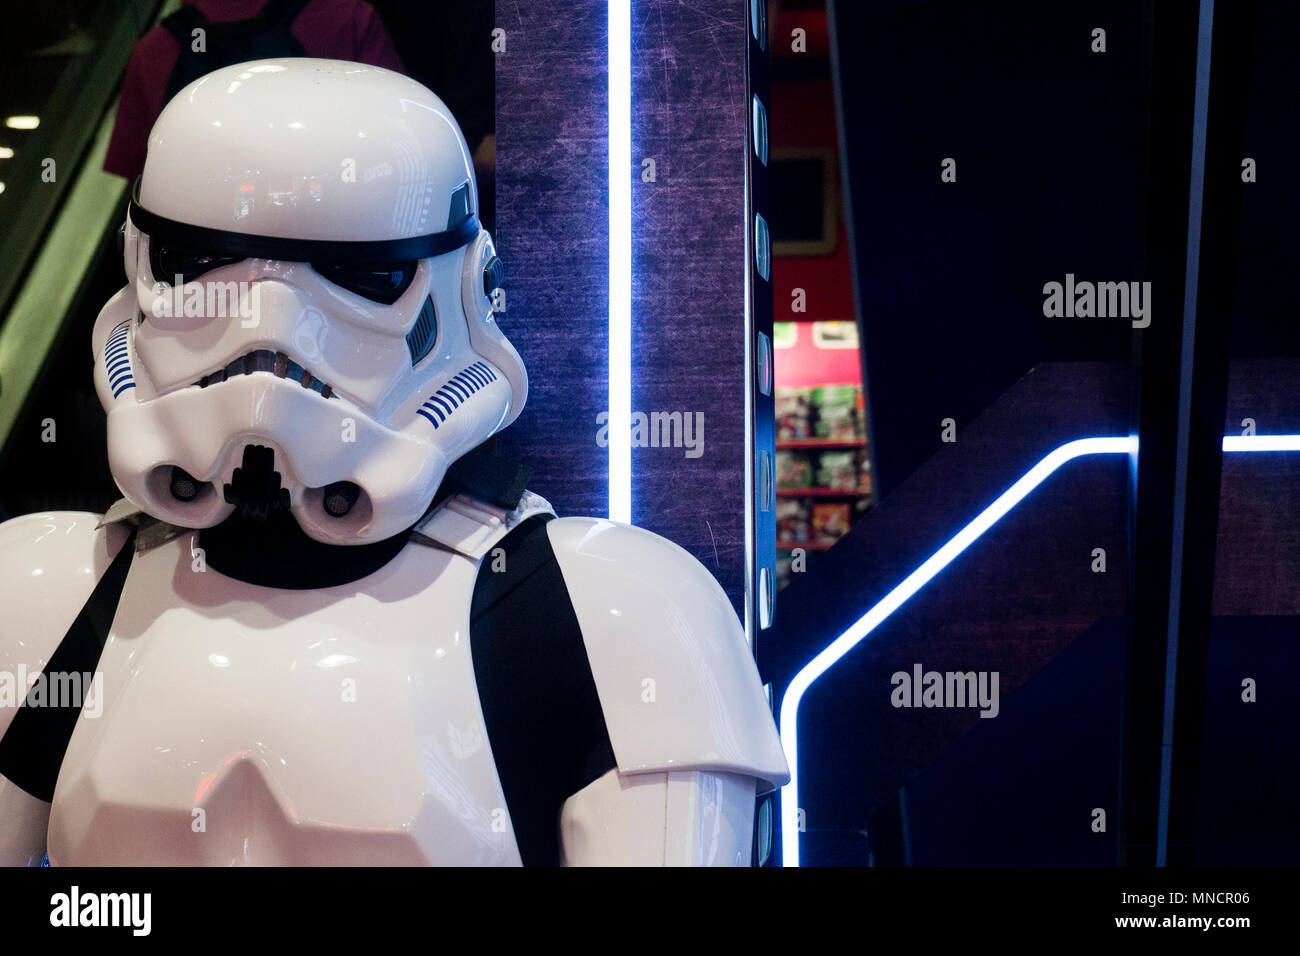 LONDON, UK - 15. MAI 2018: ein Stormtrooper Figur aus der beliebten Star Wars Film Franchise auf dem Display Stockfoto